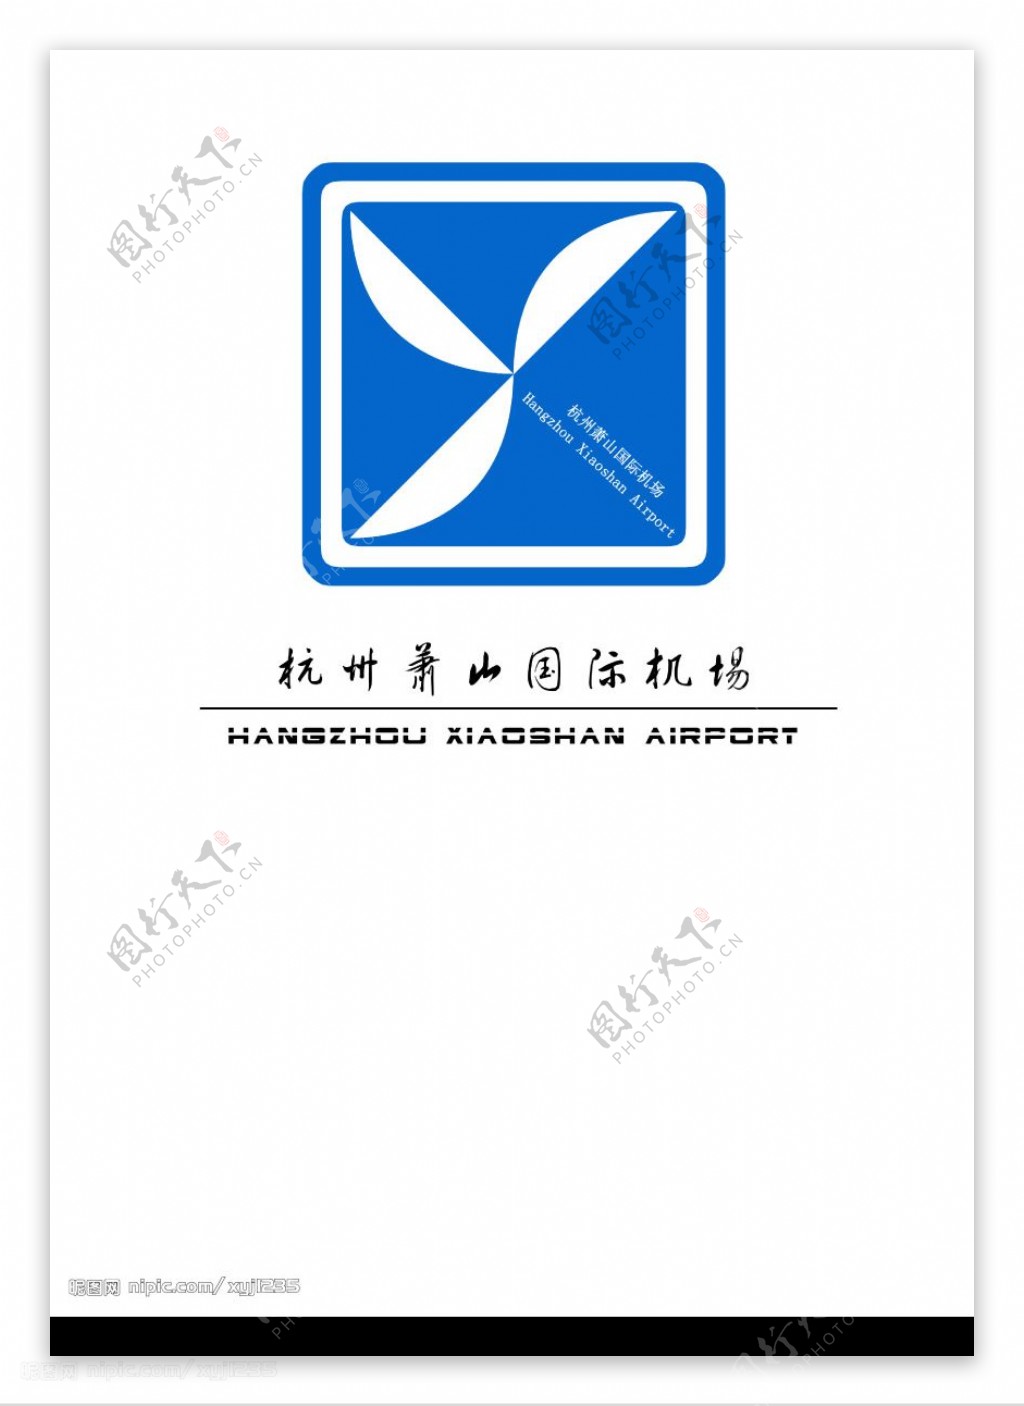 杭州萧山机场标志设计图片